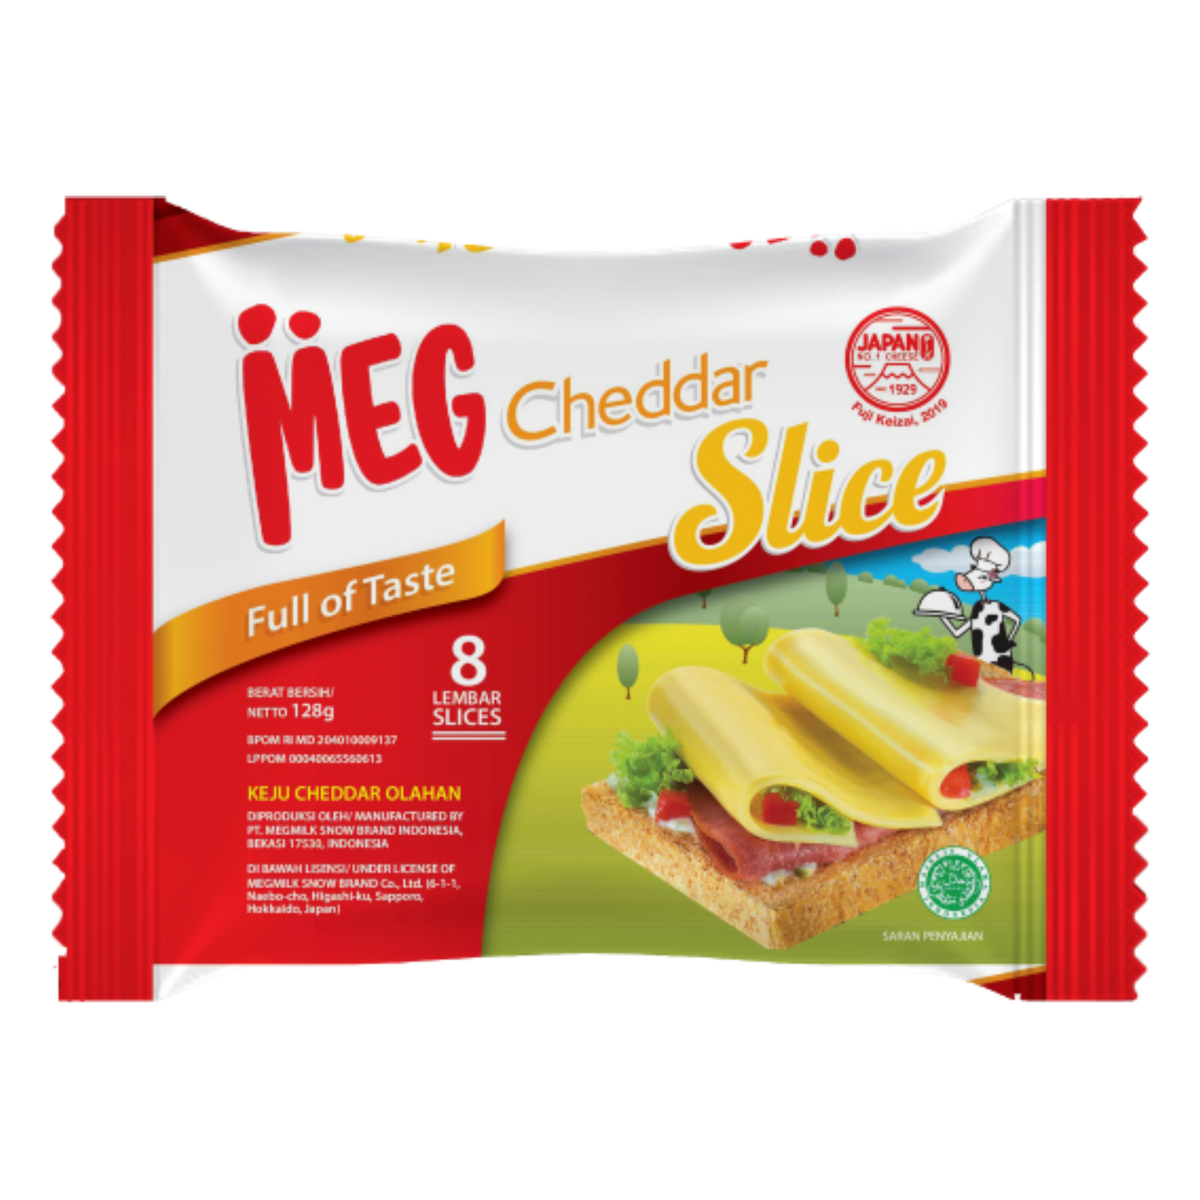 Meg Cheddar 8 Slice 136g